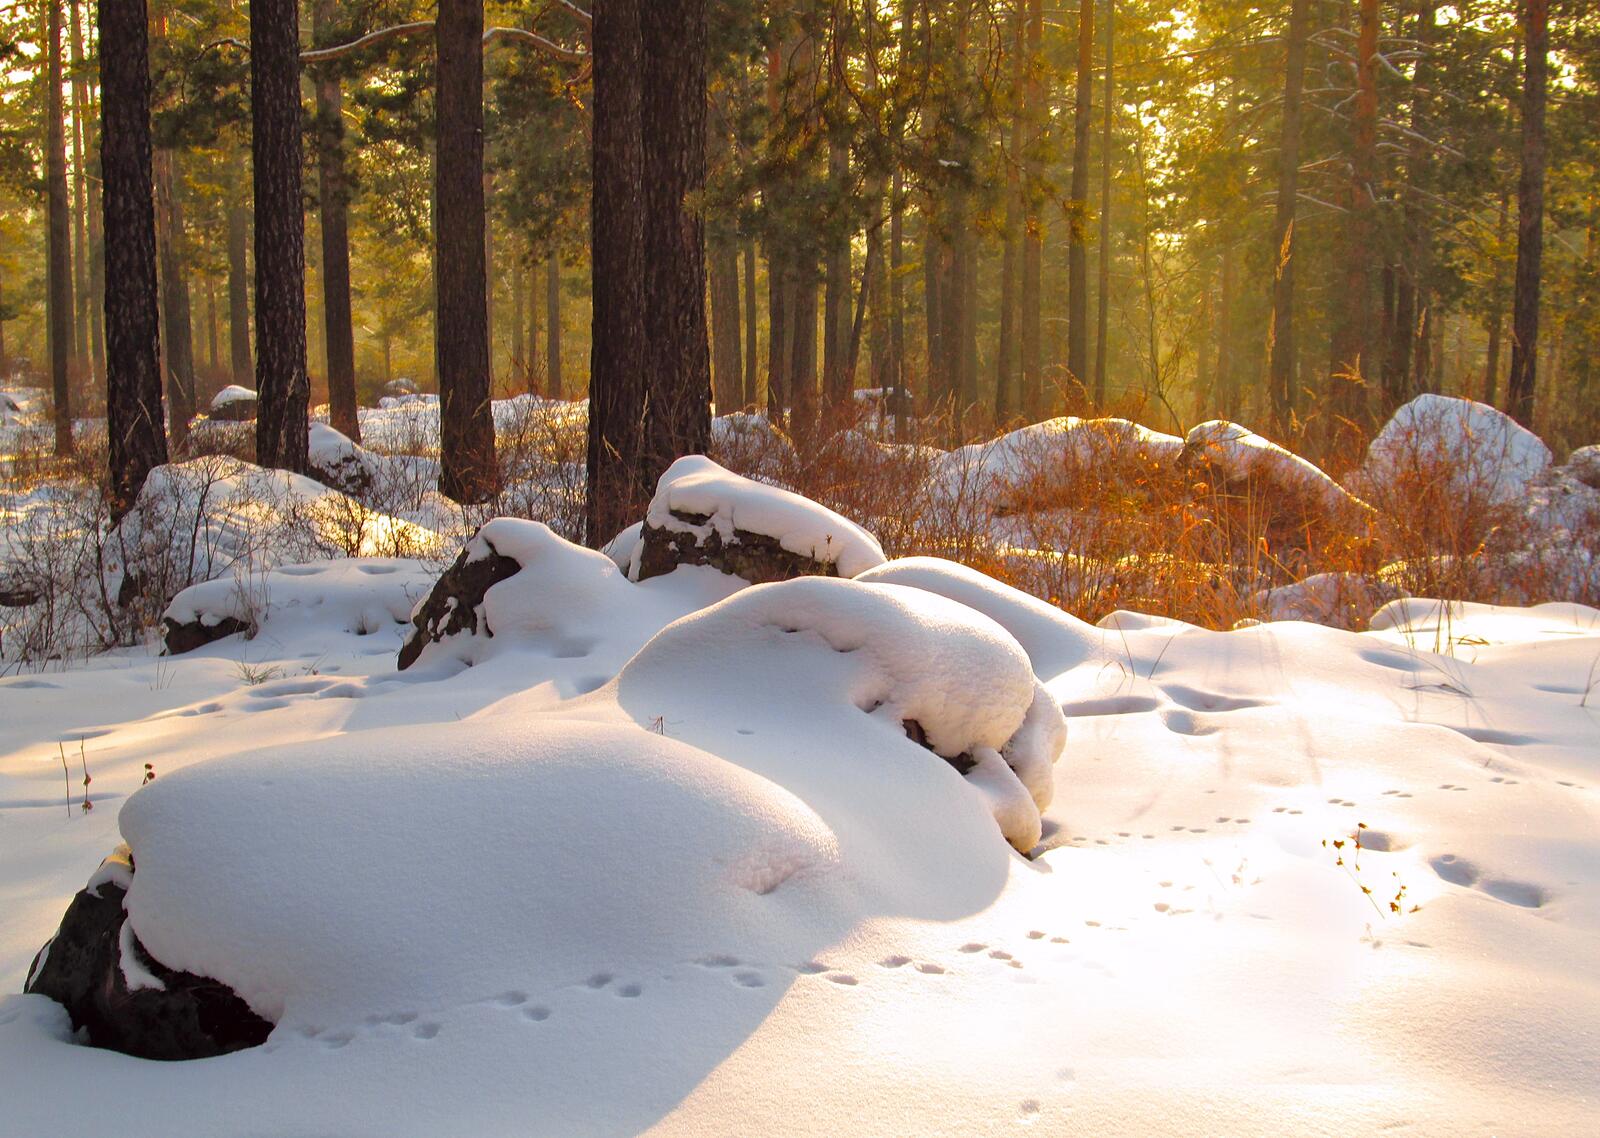 Сугробы снега на камнях в хвойном лесу